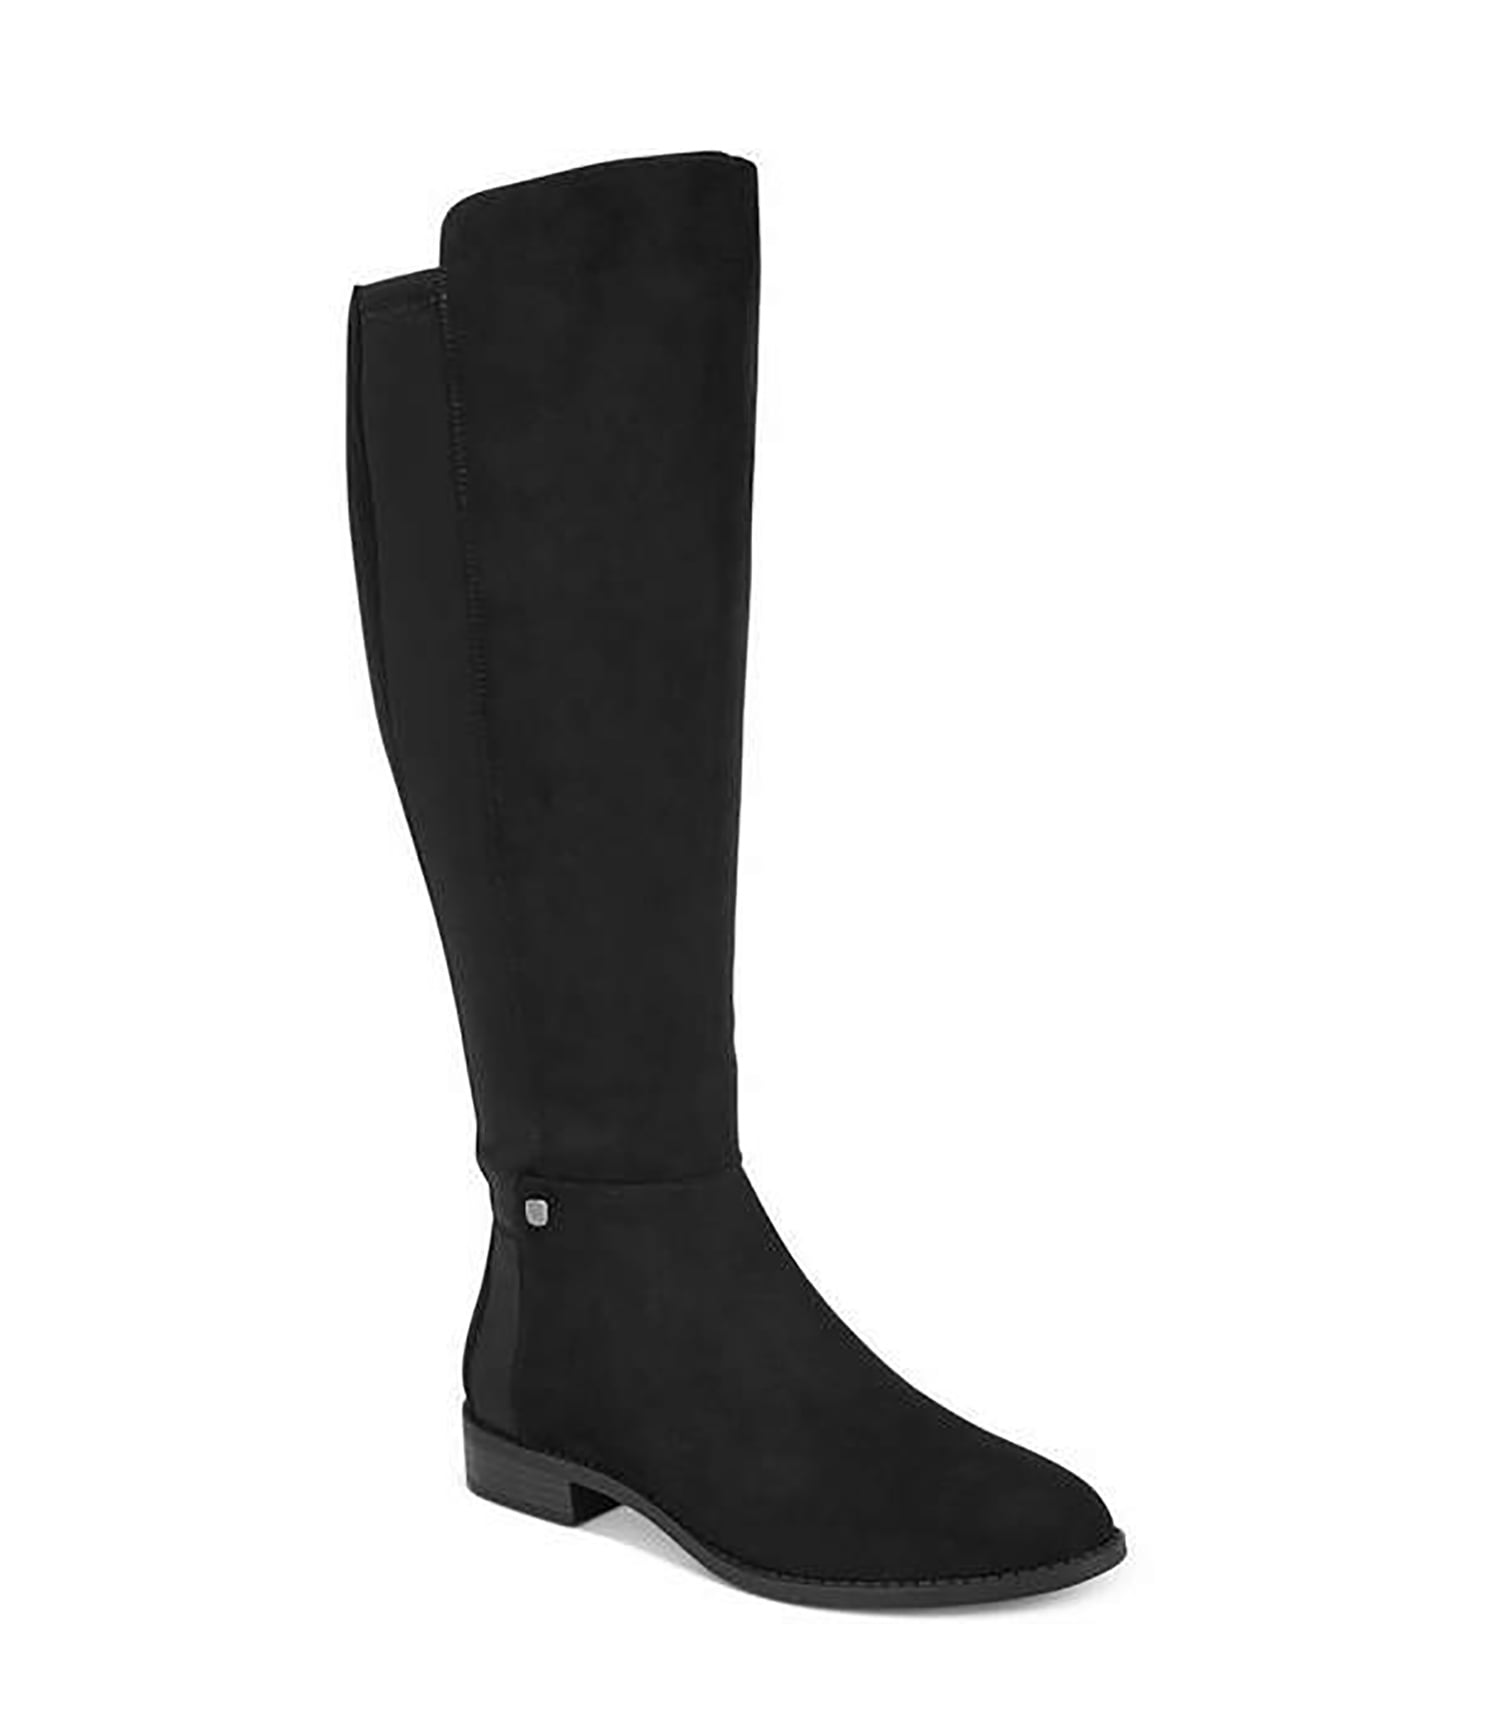 Alfani - Alfani | Pippaa Tall Boots | Black | Size 5 MWC - Walmart.com ...